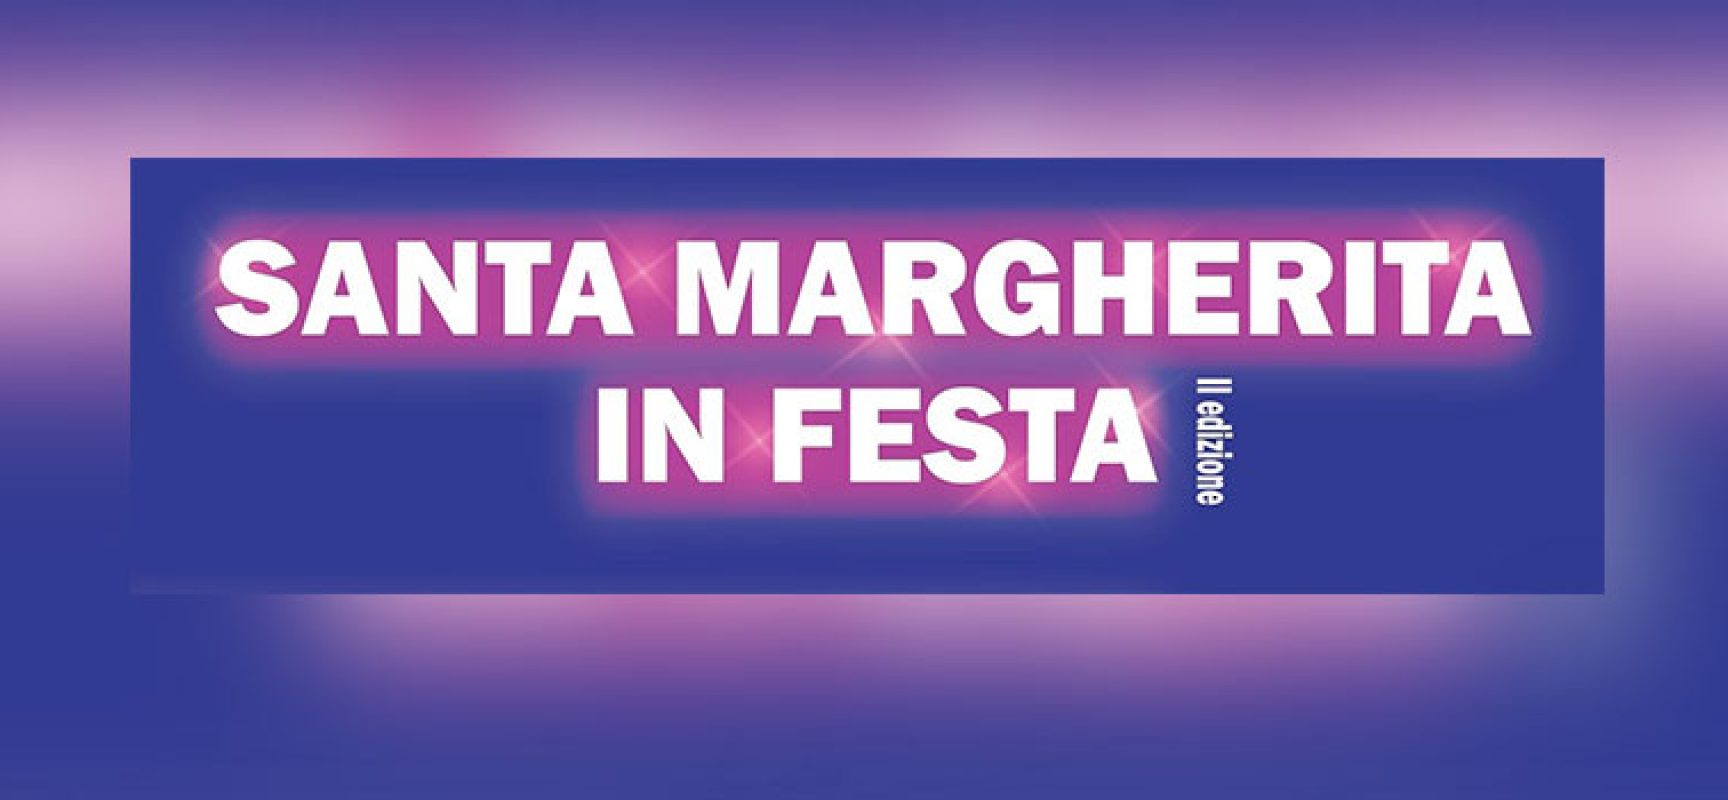 Torna “Santa Margherita in festa” con un nuovo evento e una sorpresa